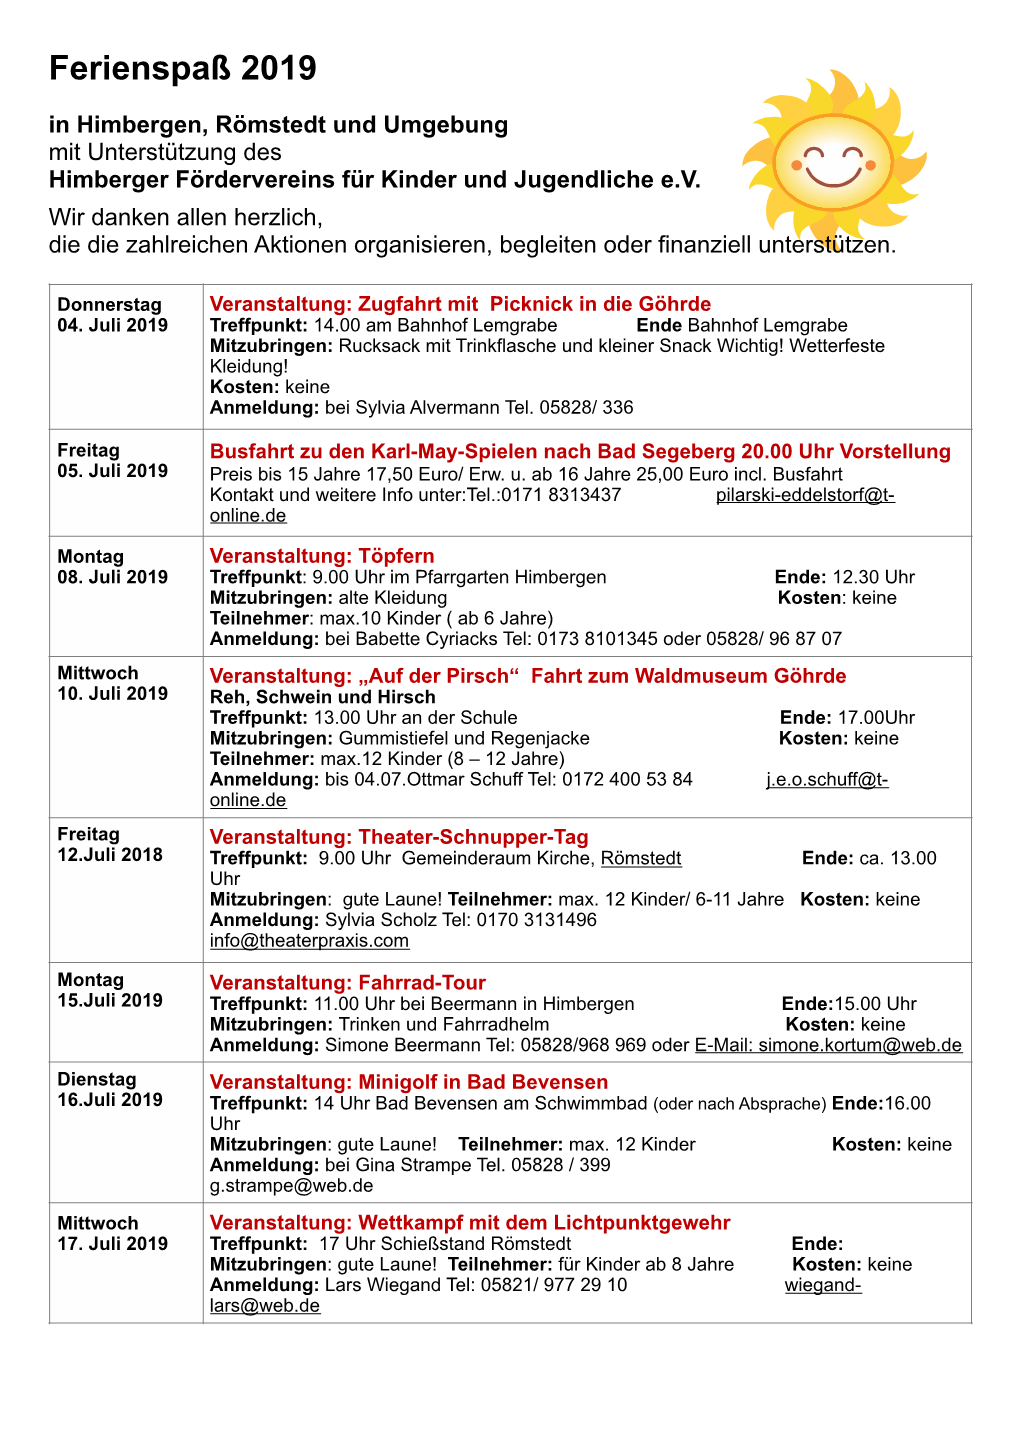 Ferienspaß 2019 in Himbergen, Römstedt Und Umgebung Mit Unterstützung Des Himberger Fördervereins Für Kinder Und Jugendliche E.V